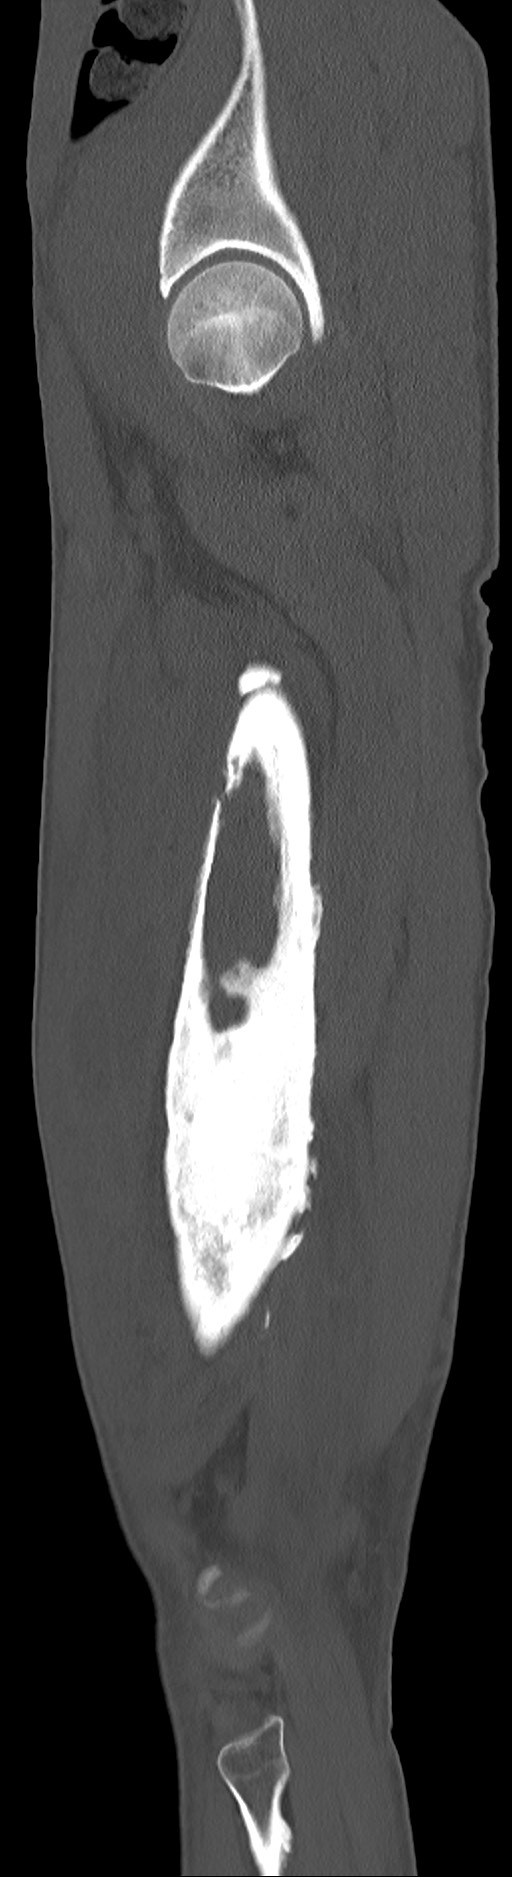 Chronic osteomyelitis (with sequestrum) (Radiopaedia 74813-85822 C 85).jpg